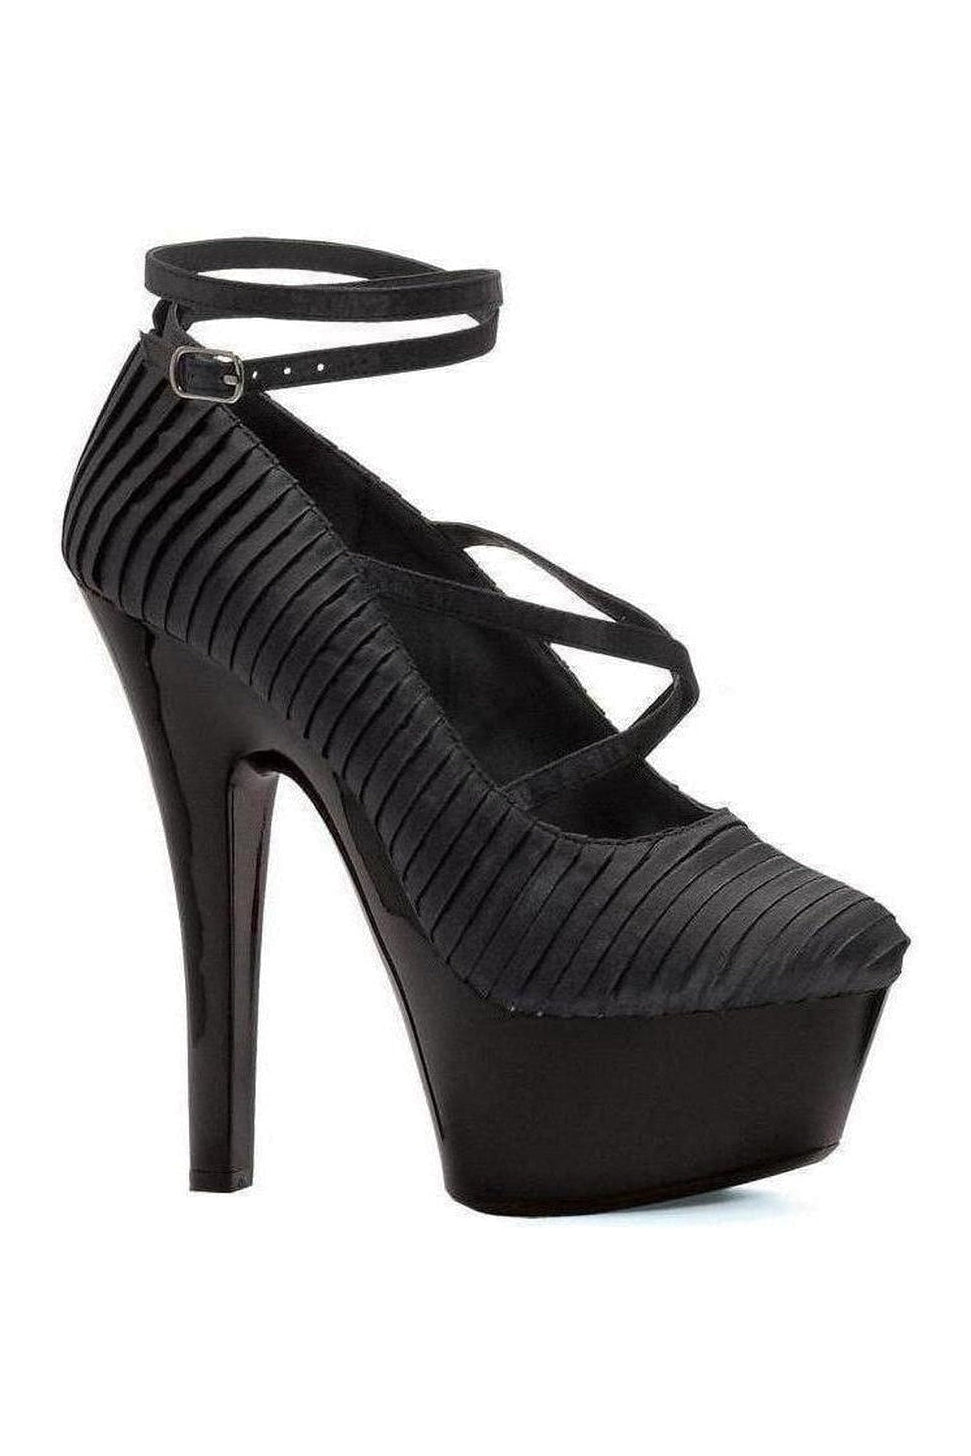 601-JUDITH Pump | Black Patent-Ellie Shoes-SEXYSHOES.COM